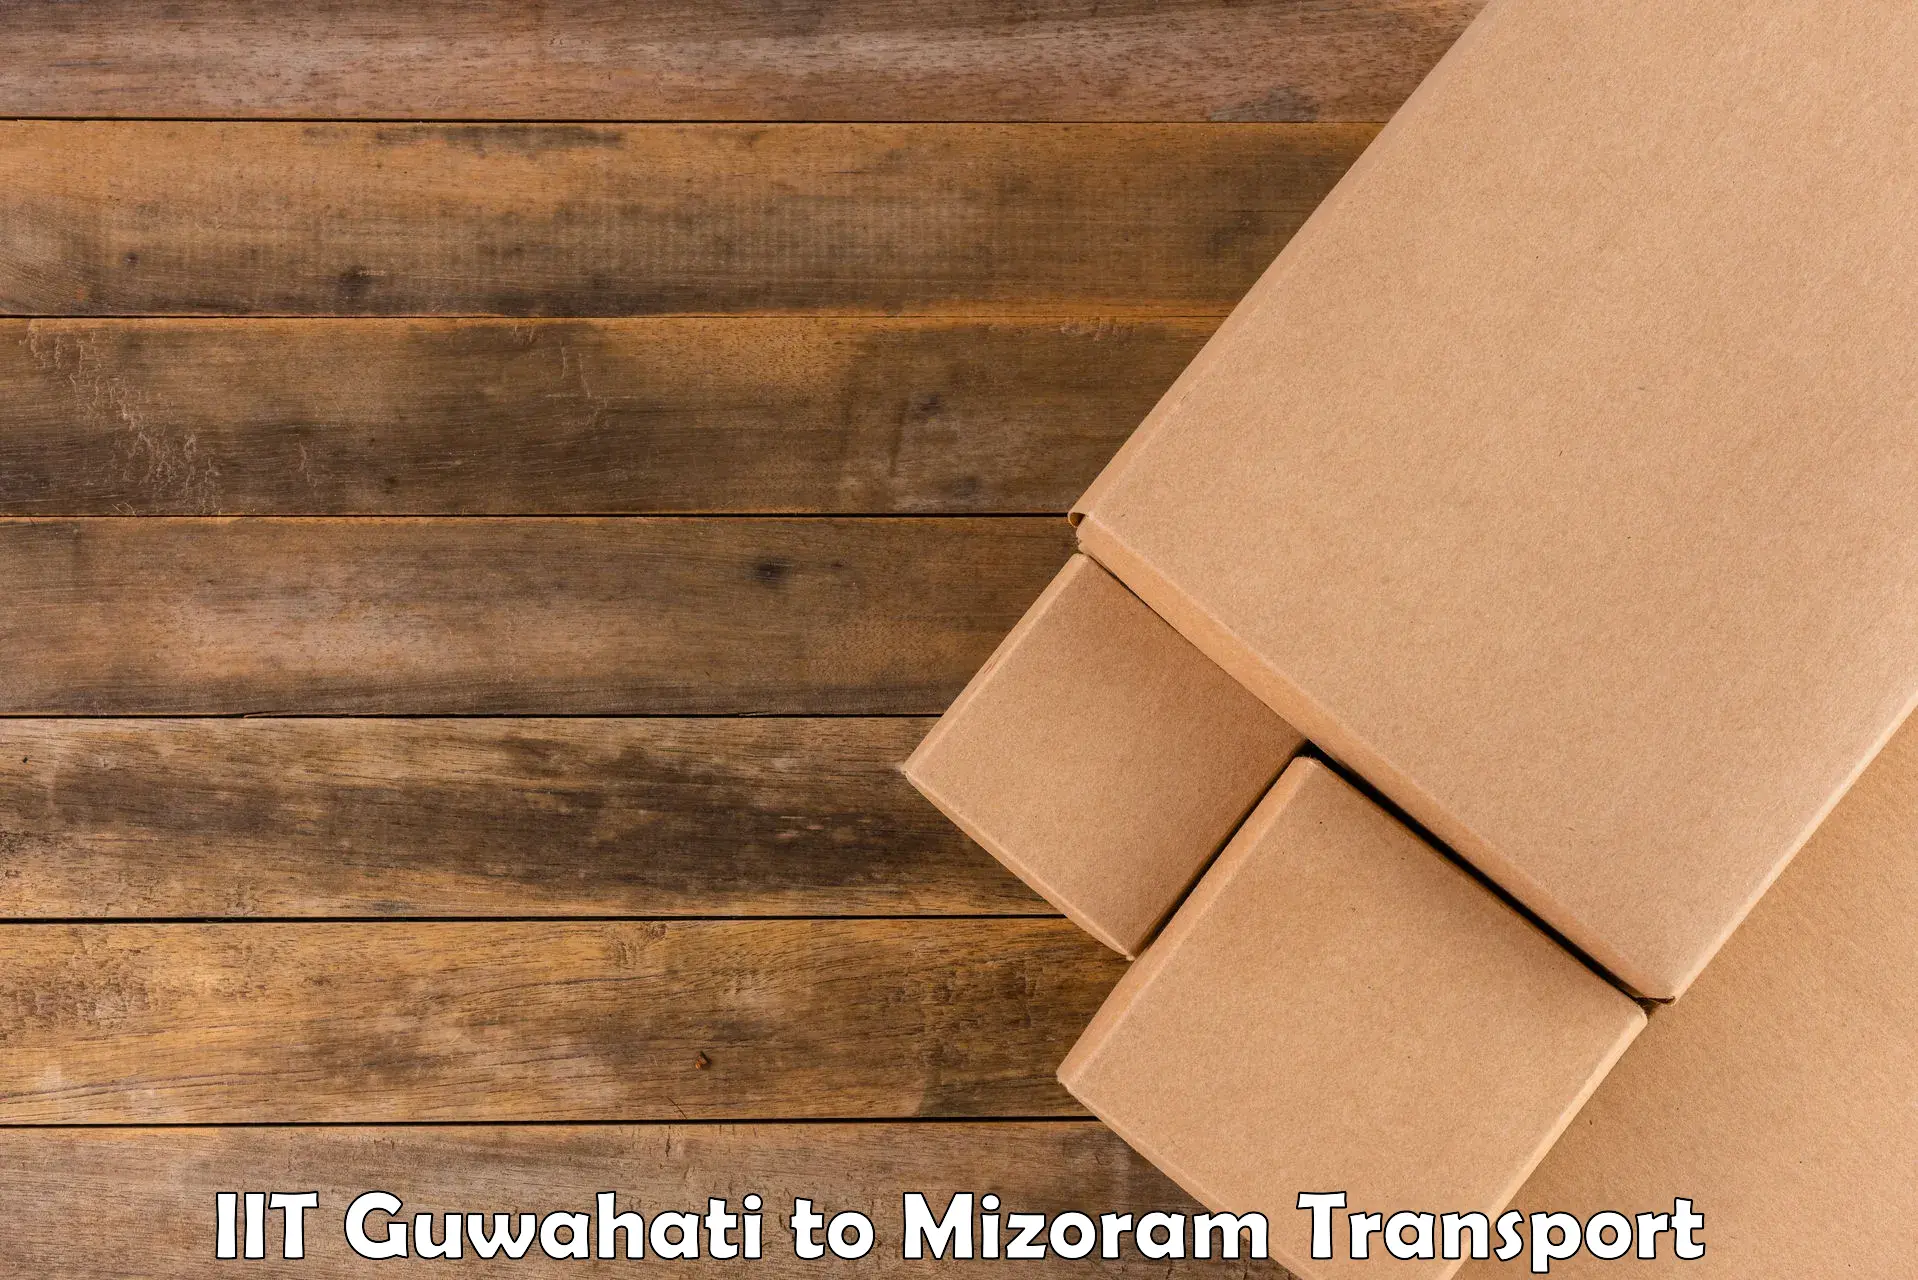 Transport in sharing IIT Guwahati to Darlawn